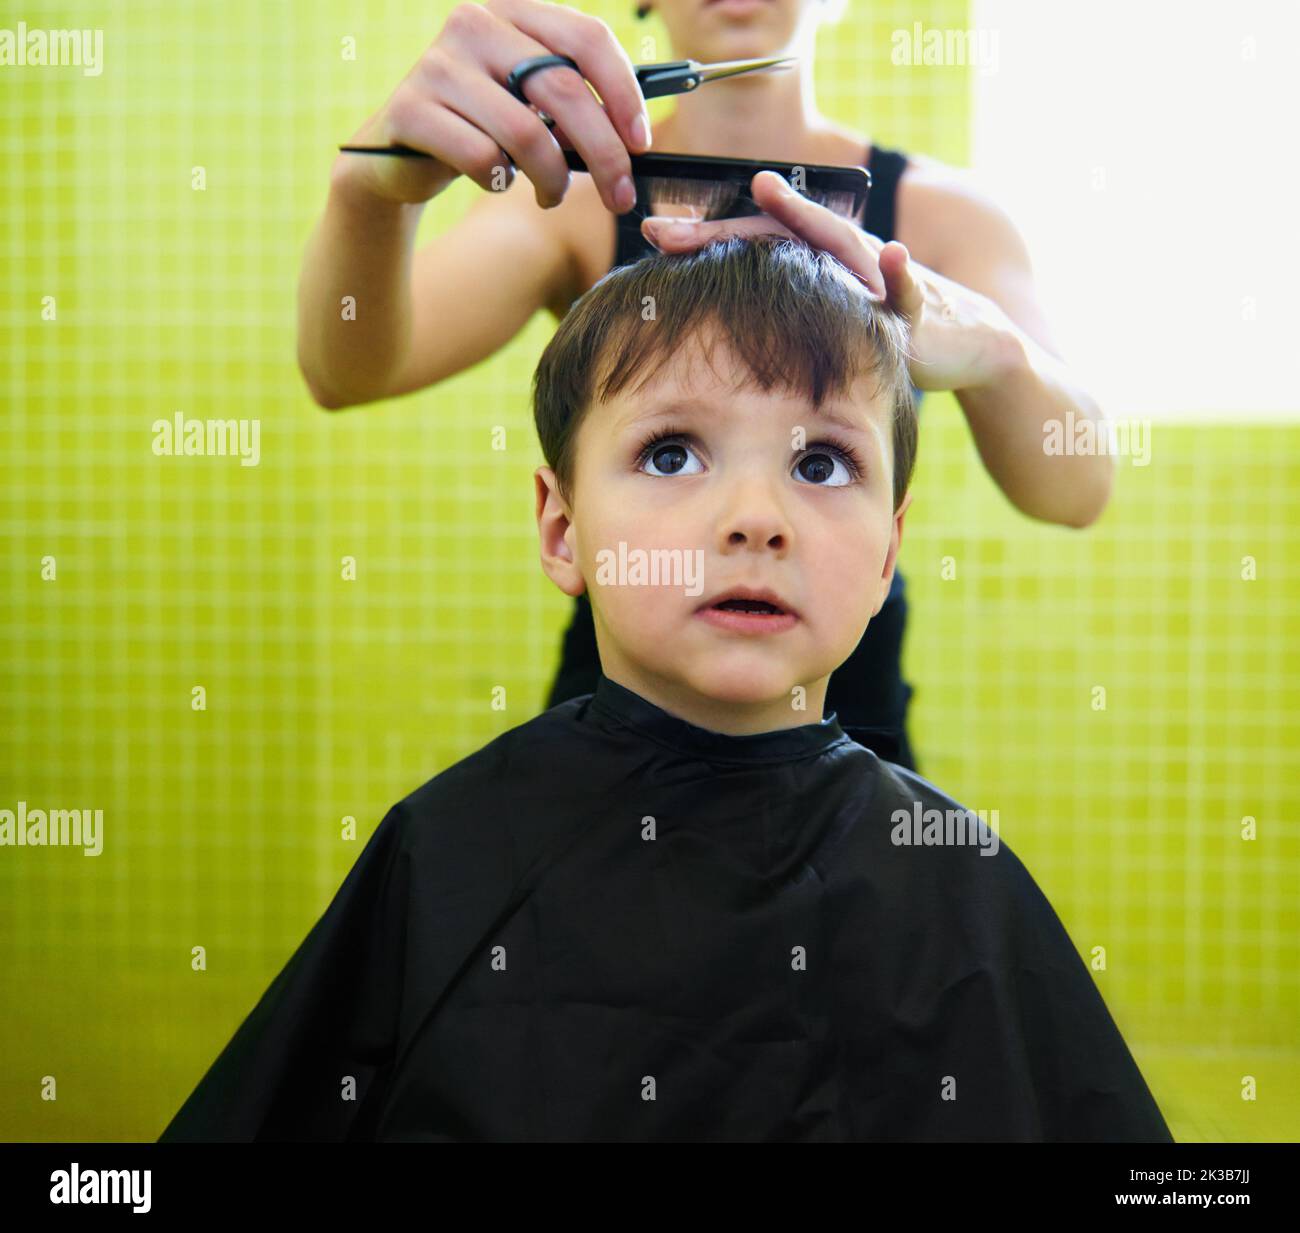 Esto no es tan malo... un chico joven que se corta el pelo. Foto de stock